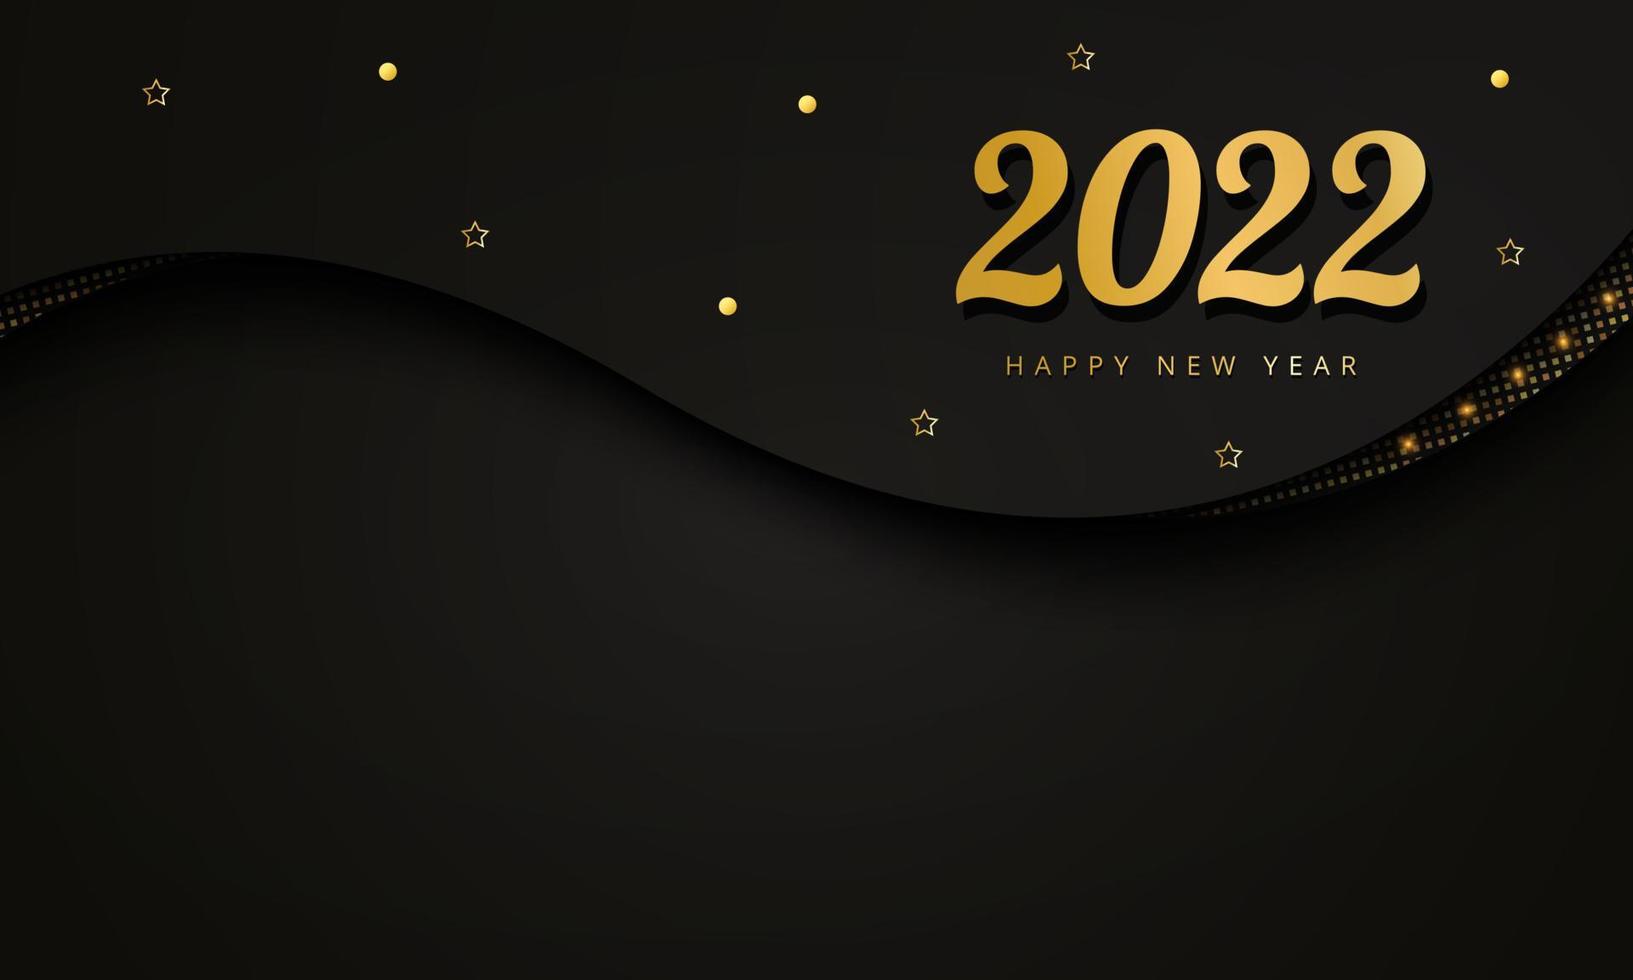 Feliz año nuevo fondo, fondo de oro 2022 con elemento dorado y brillo, concepto de fondo de lujo. Adecuado para varios diseños de fondo, plantillas, pancartas, carteles, presentaciones, etc. vector